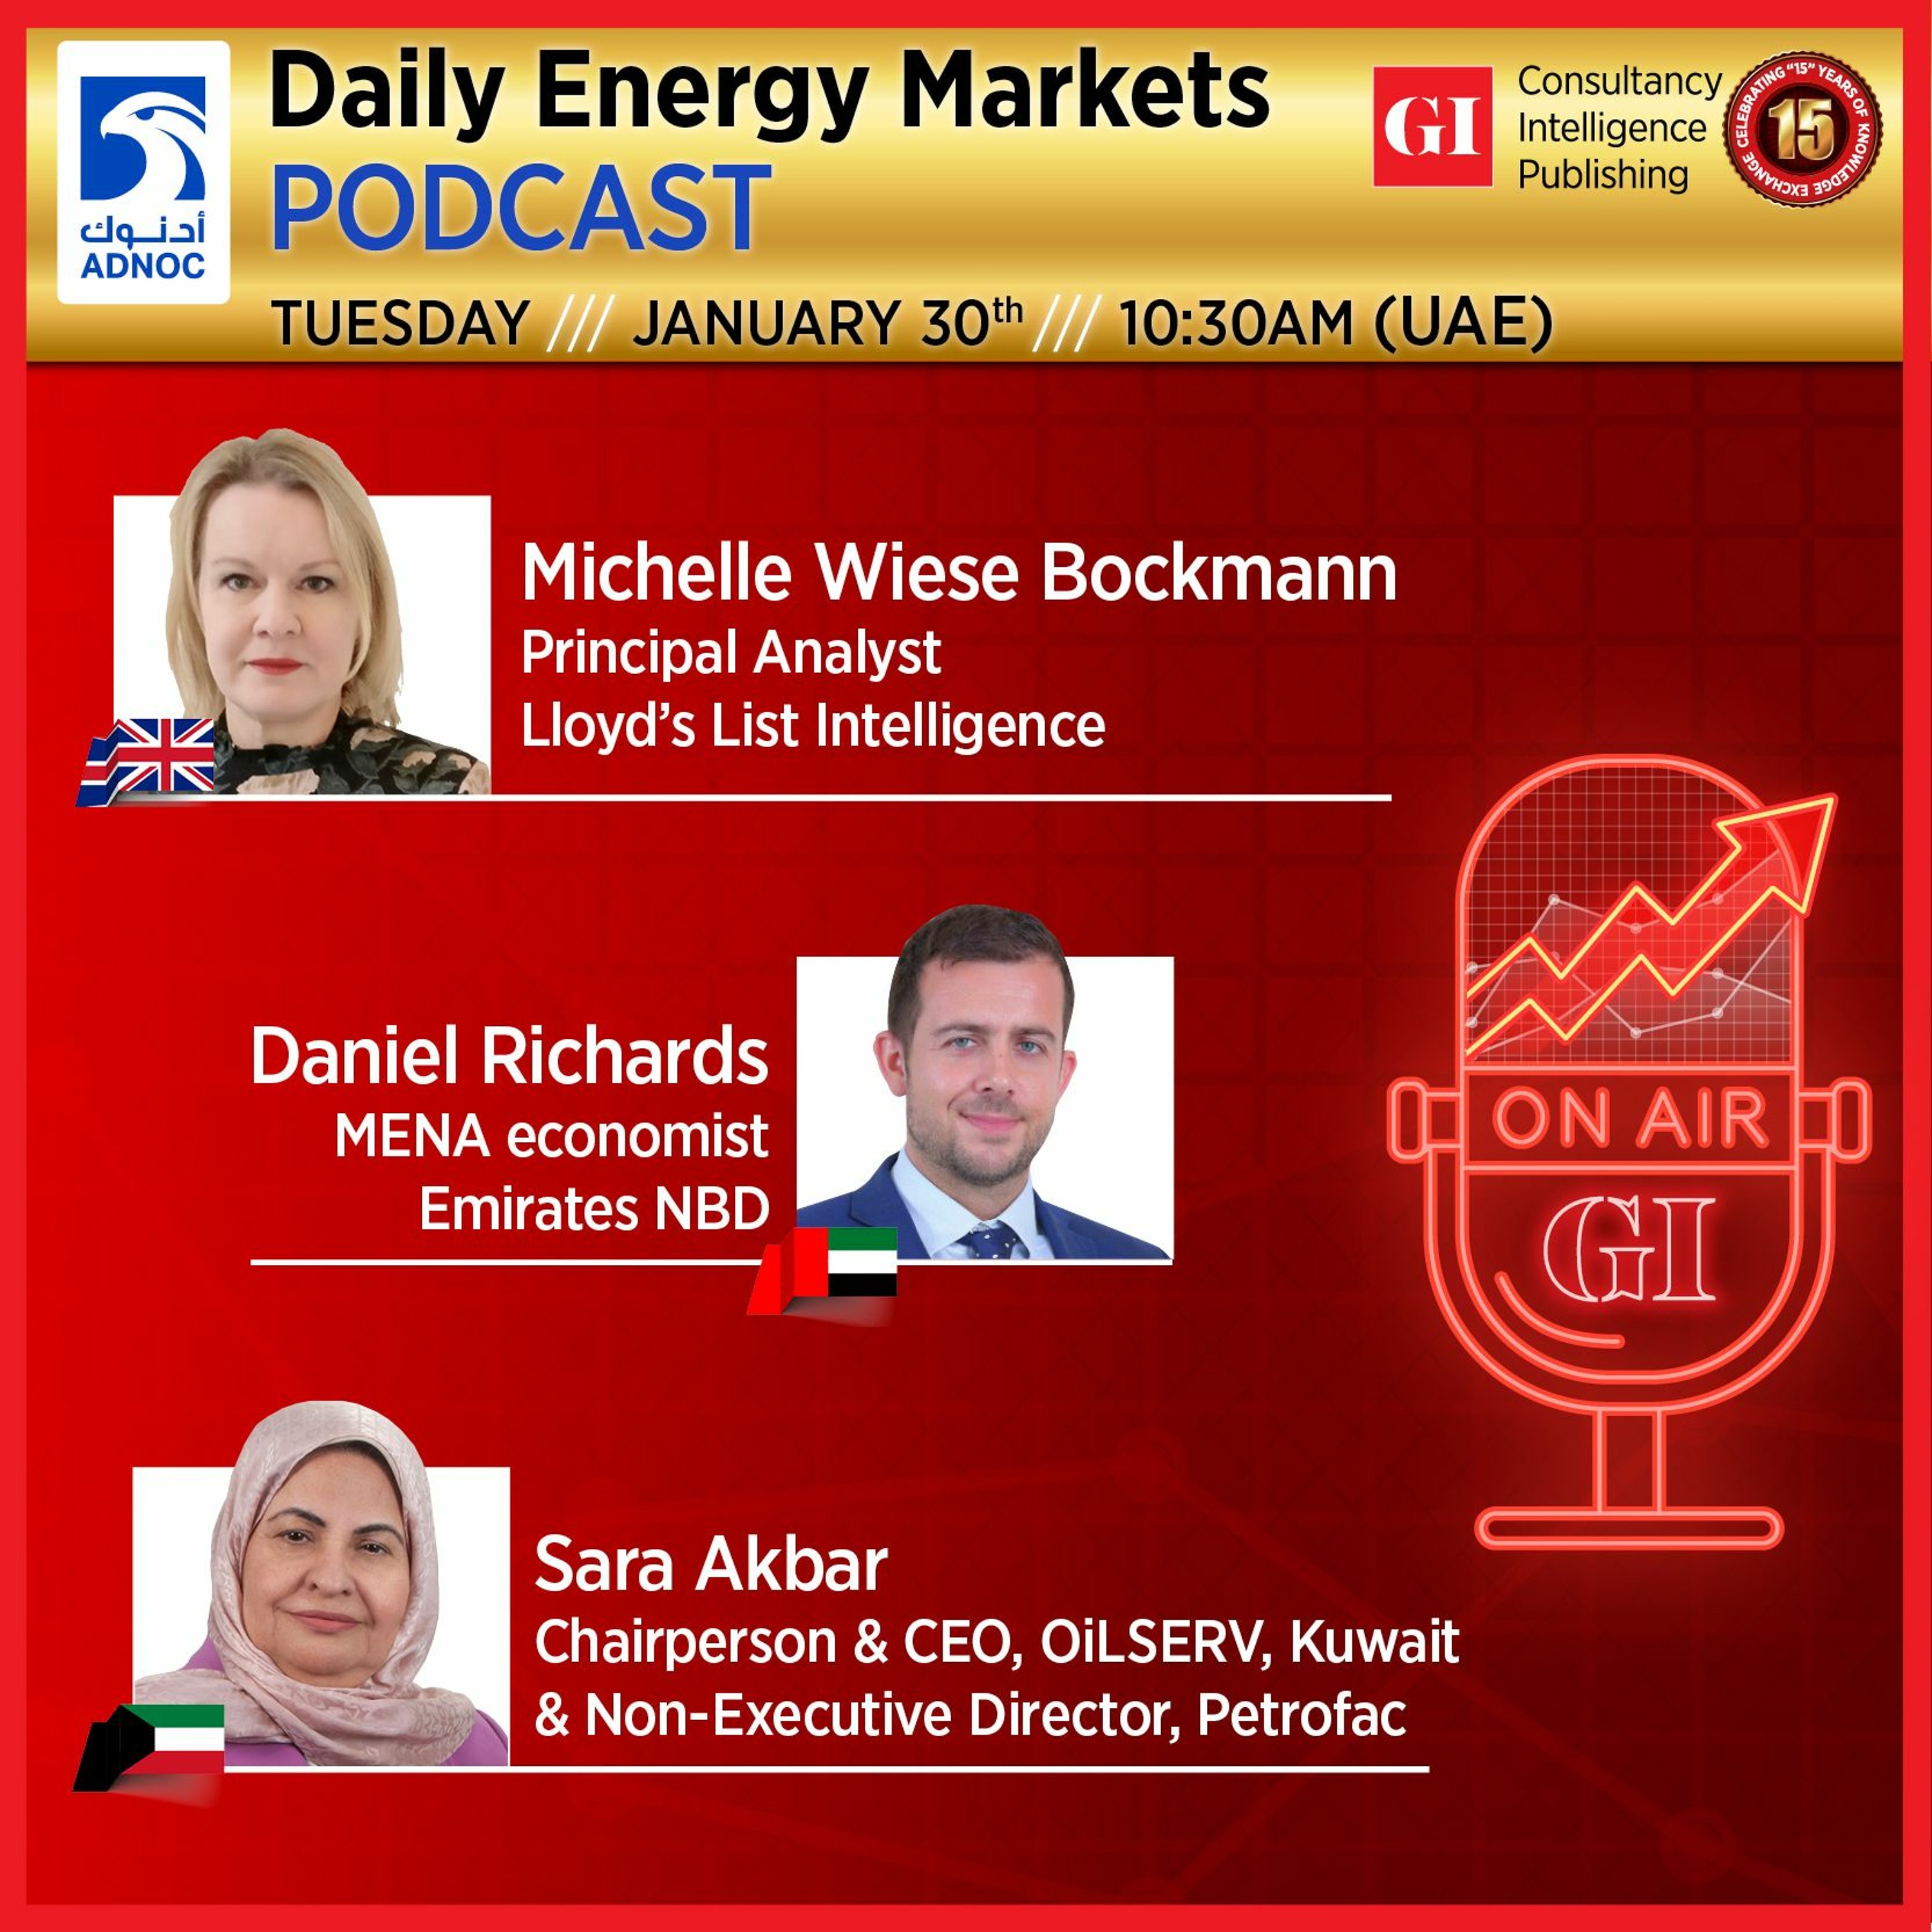 PODCAST: Daily Energy Markets - January 30th